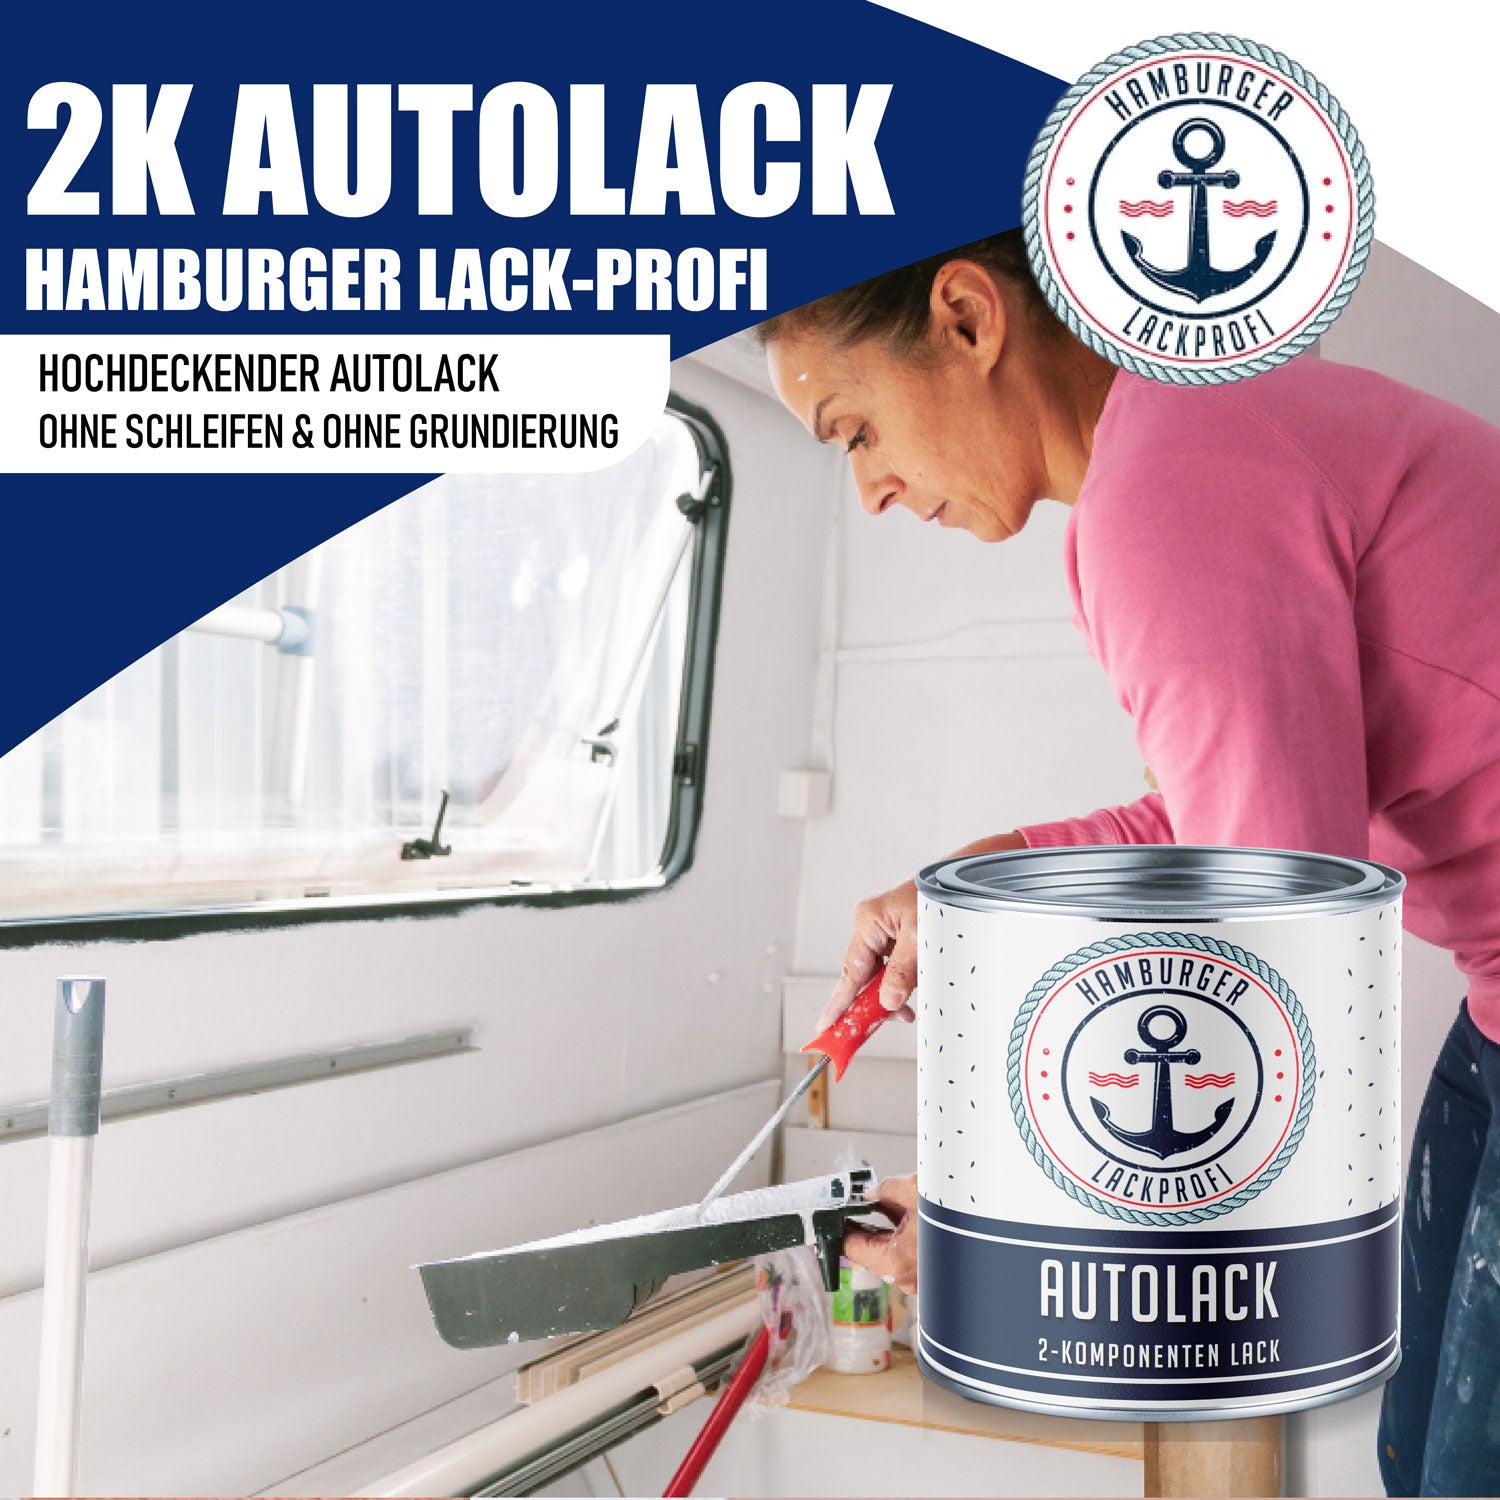 Hamburger Lack-Profi 2K Autolack Fenstergrau RAL 7040 - hochdeckend & rostschützend